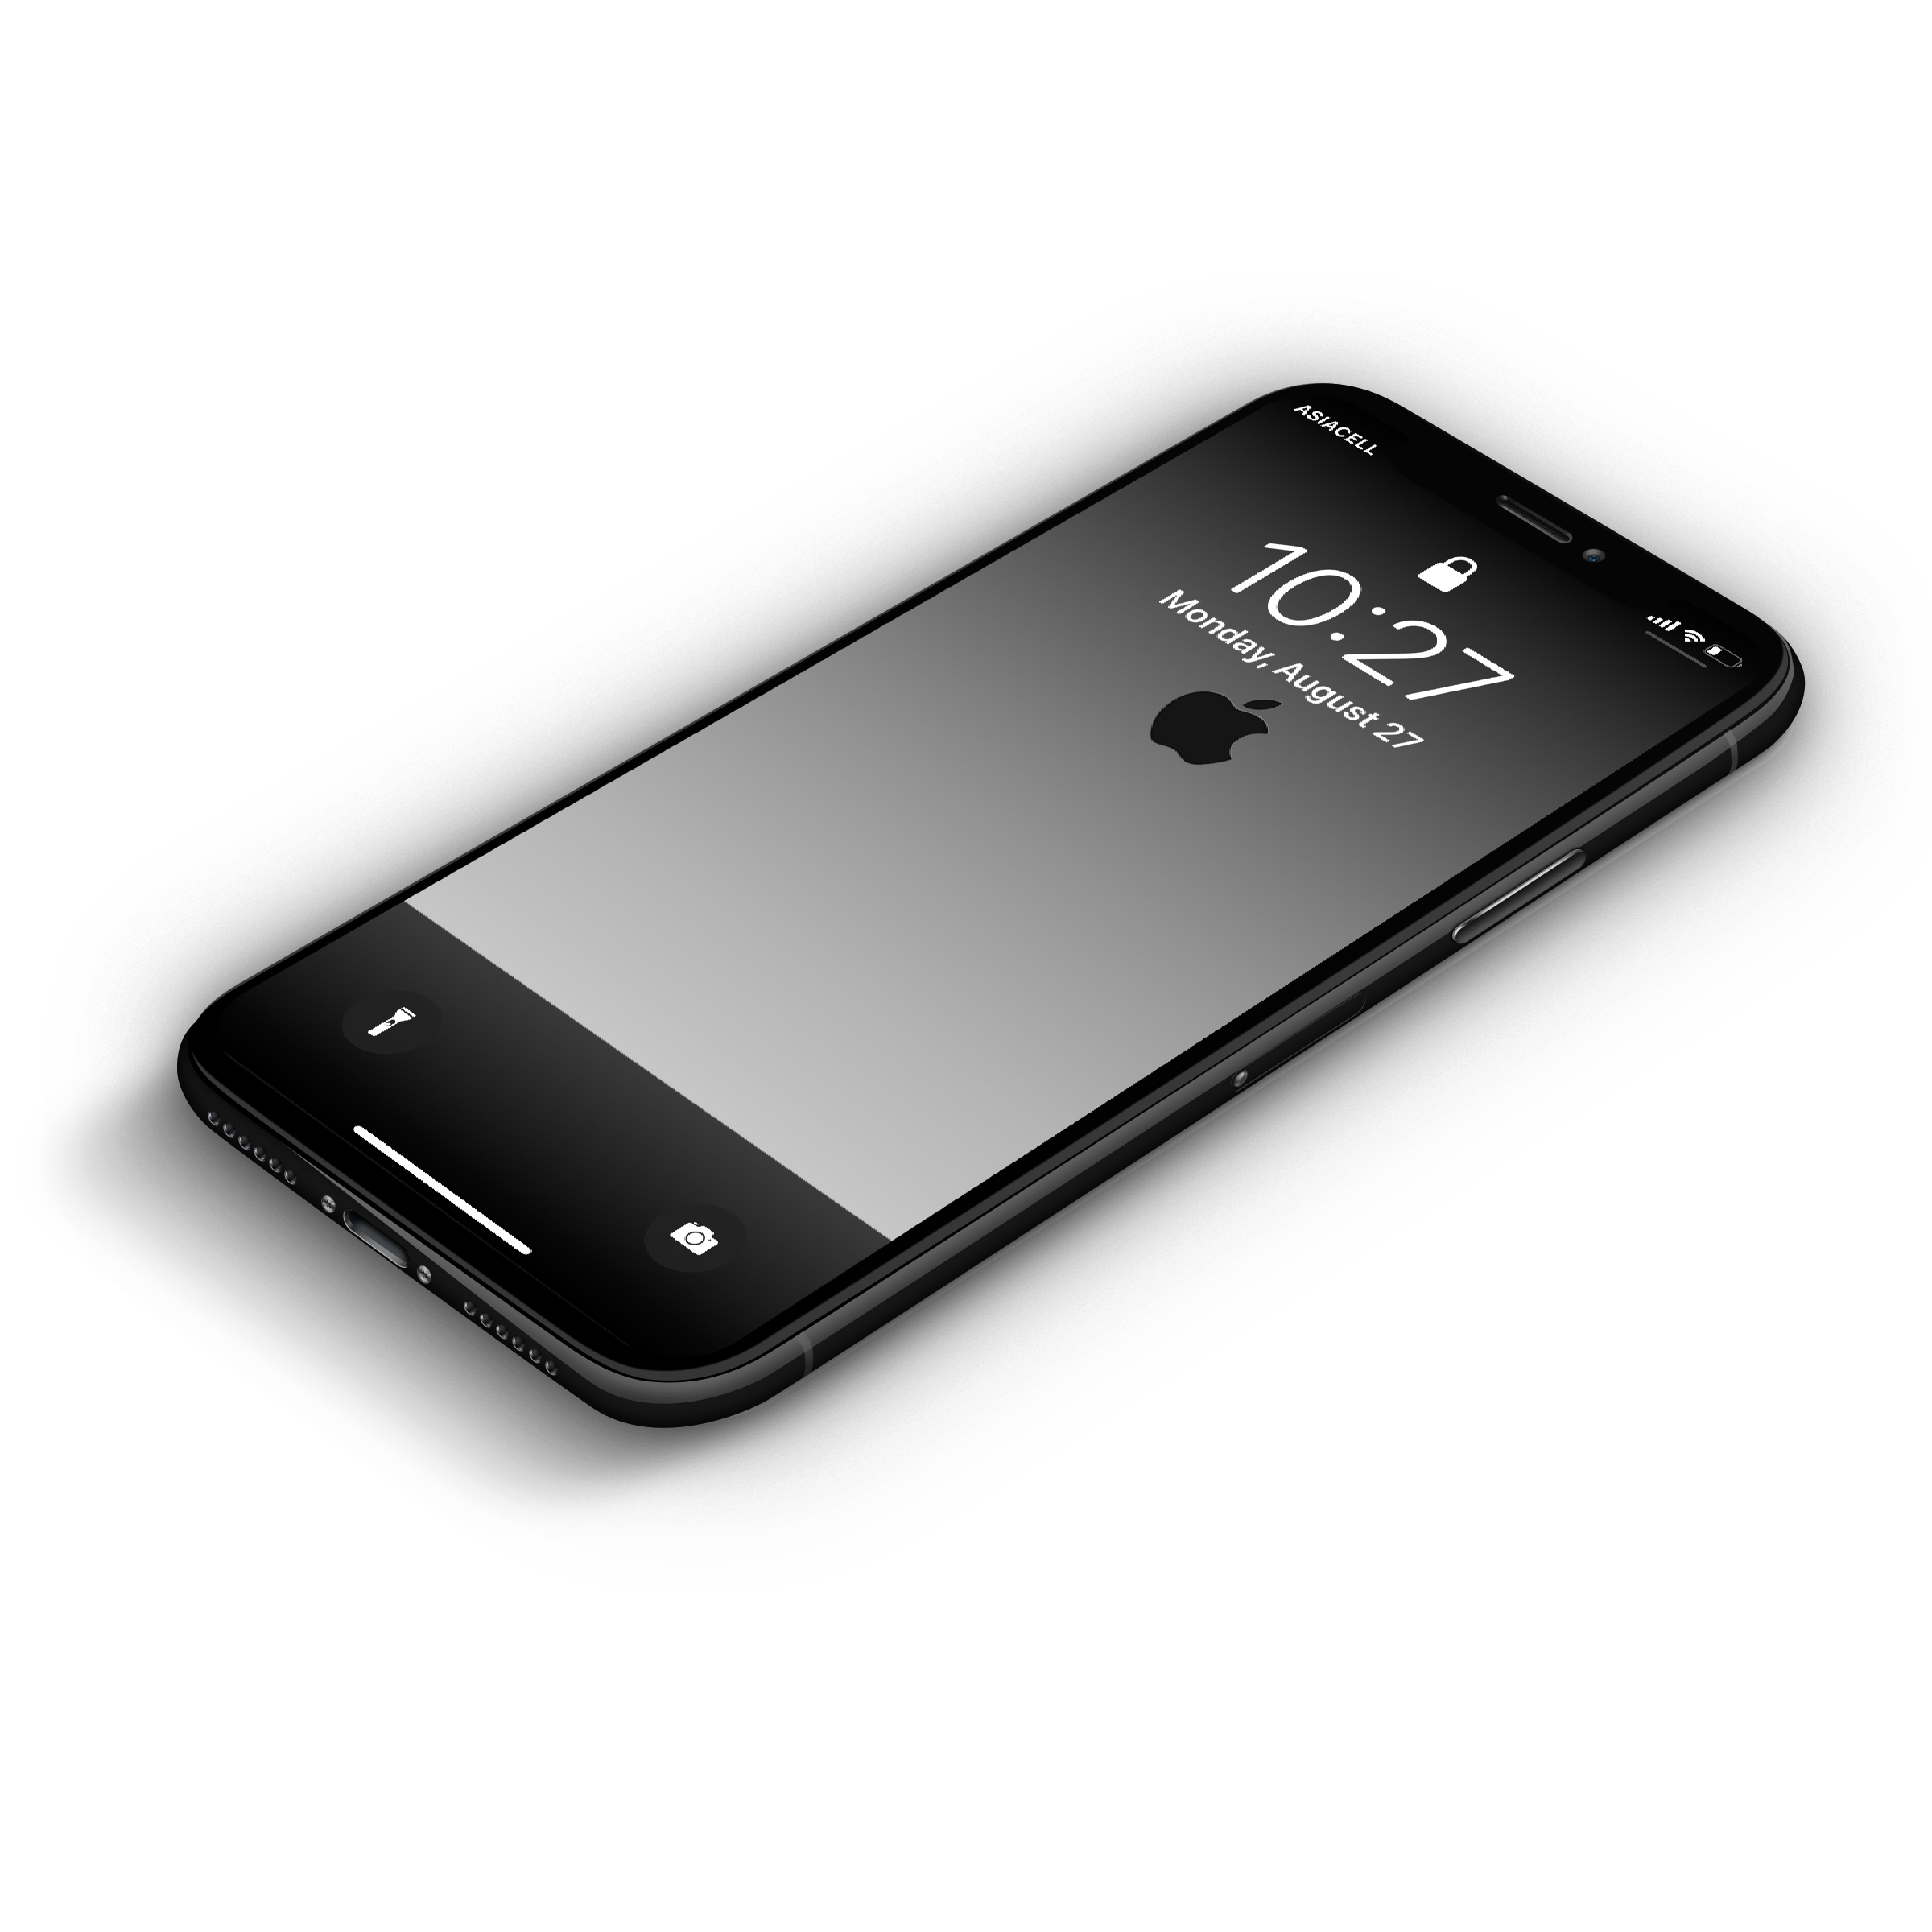 Với hình nền iPhone 2G độc đáo từ awsIQ, bạn sẽ không thể rời mắt khỏi màn hình điện thoại của mình. Hãy để bức ảnh này mang lại cho bạn cảm hứng và sự trải nghiệm mới lạ trong việc sử dụng điện thoại.